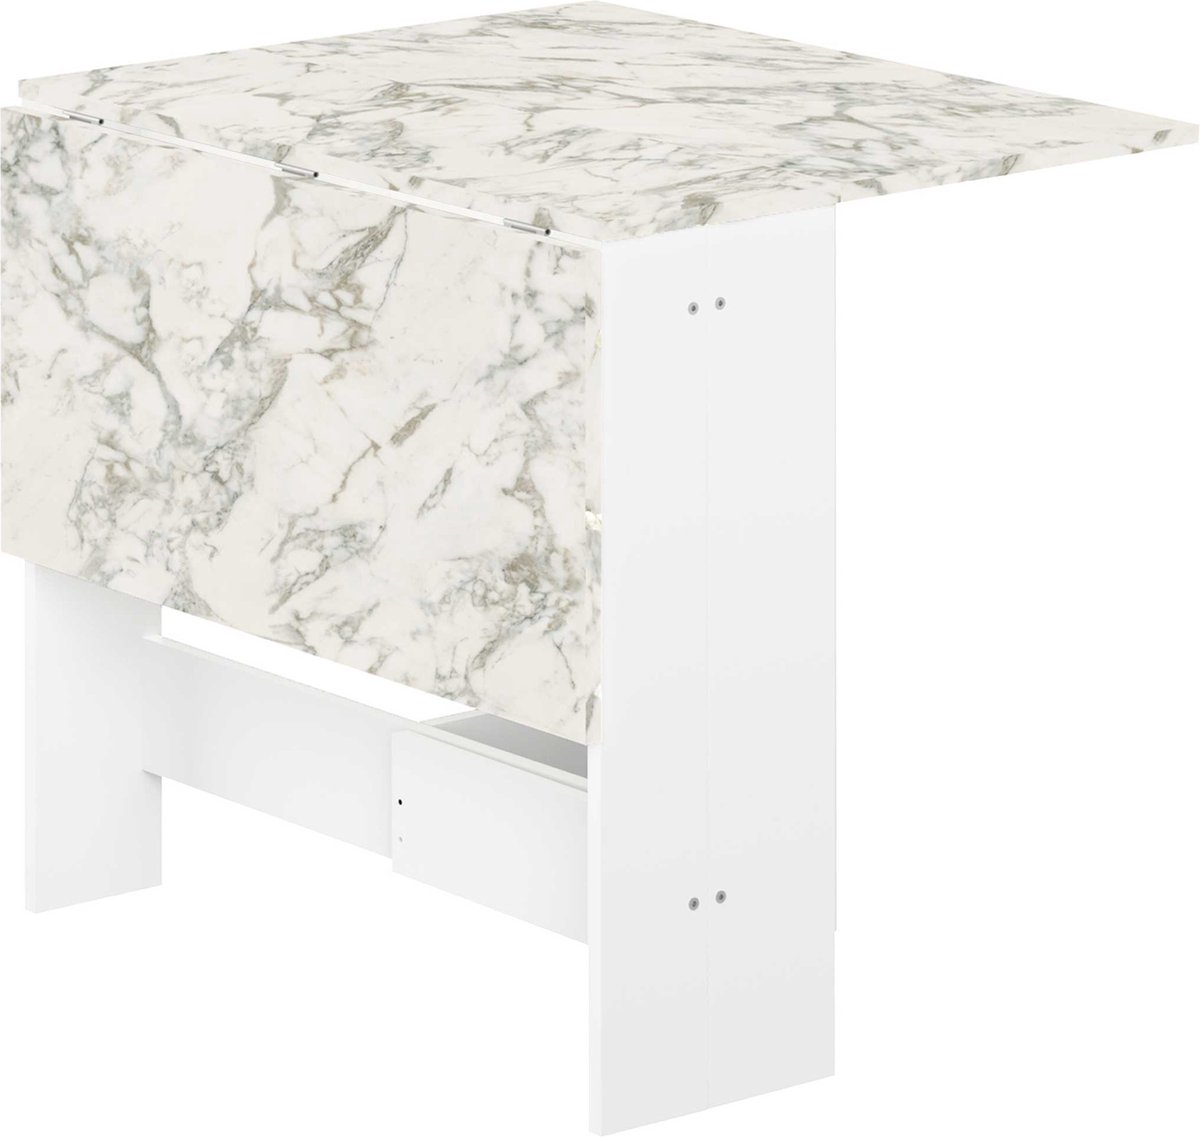 Table à manger pliable Papillon 103 cm - chêne/marbre Moderne